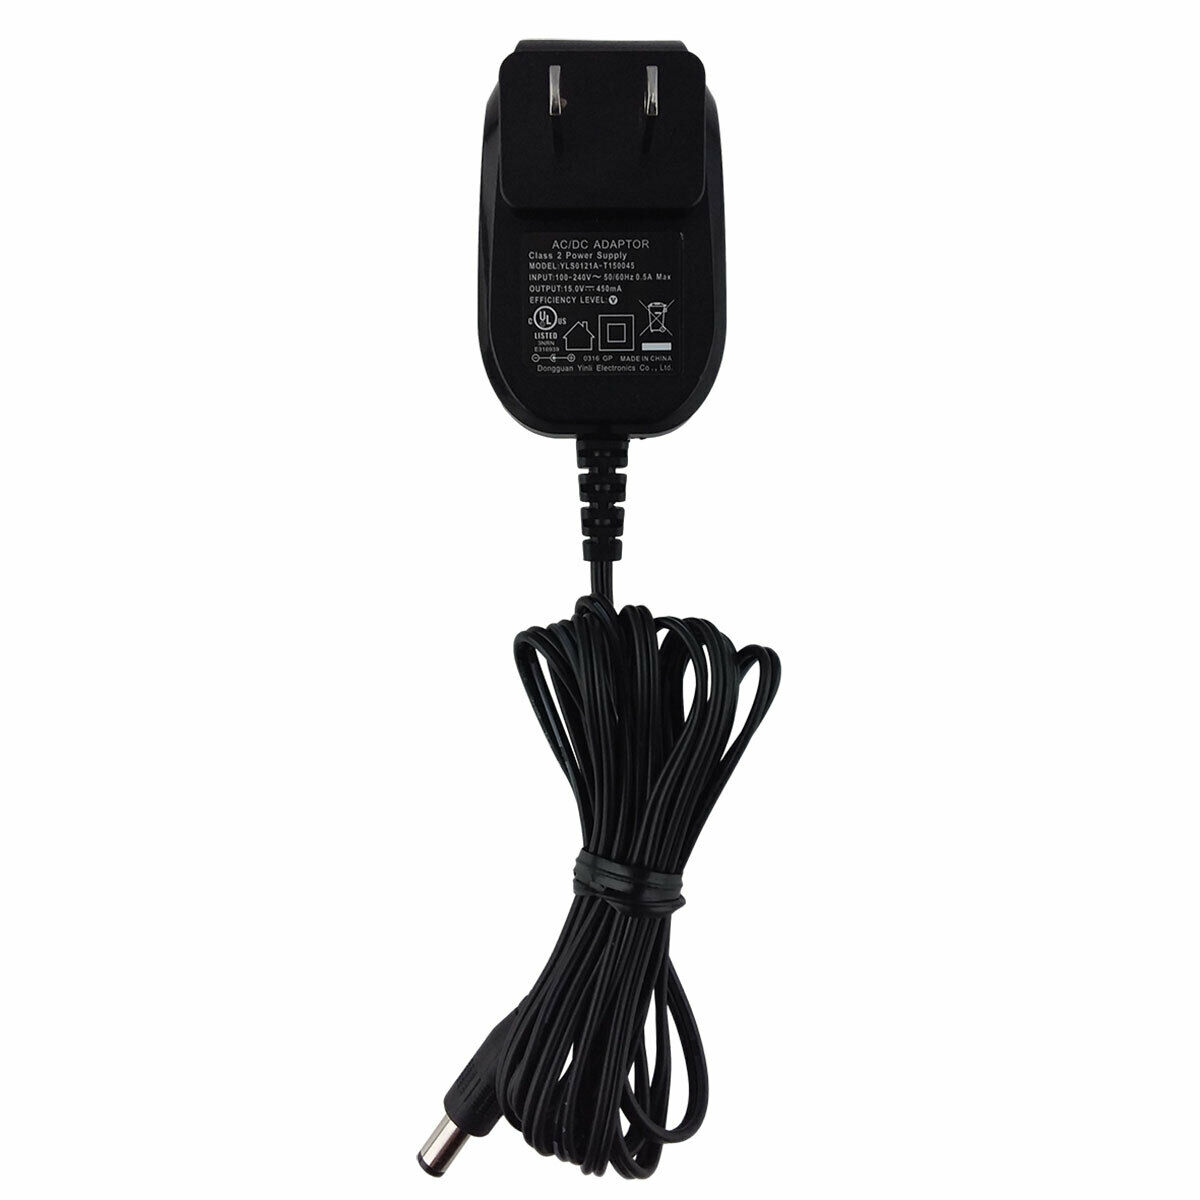 Original Malata KU2B-150-0200D Appliance Power Adapter Cable Cord Box Adaptor Brand: Malata Type: